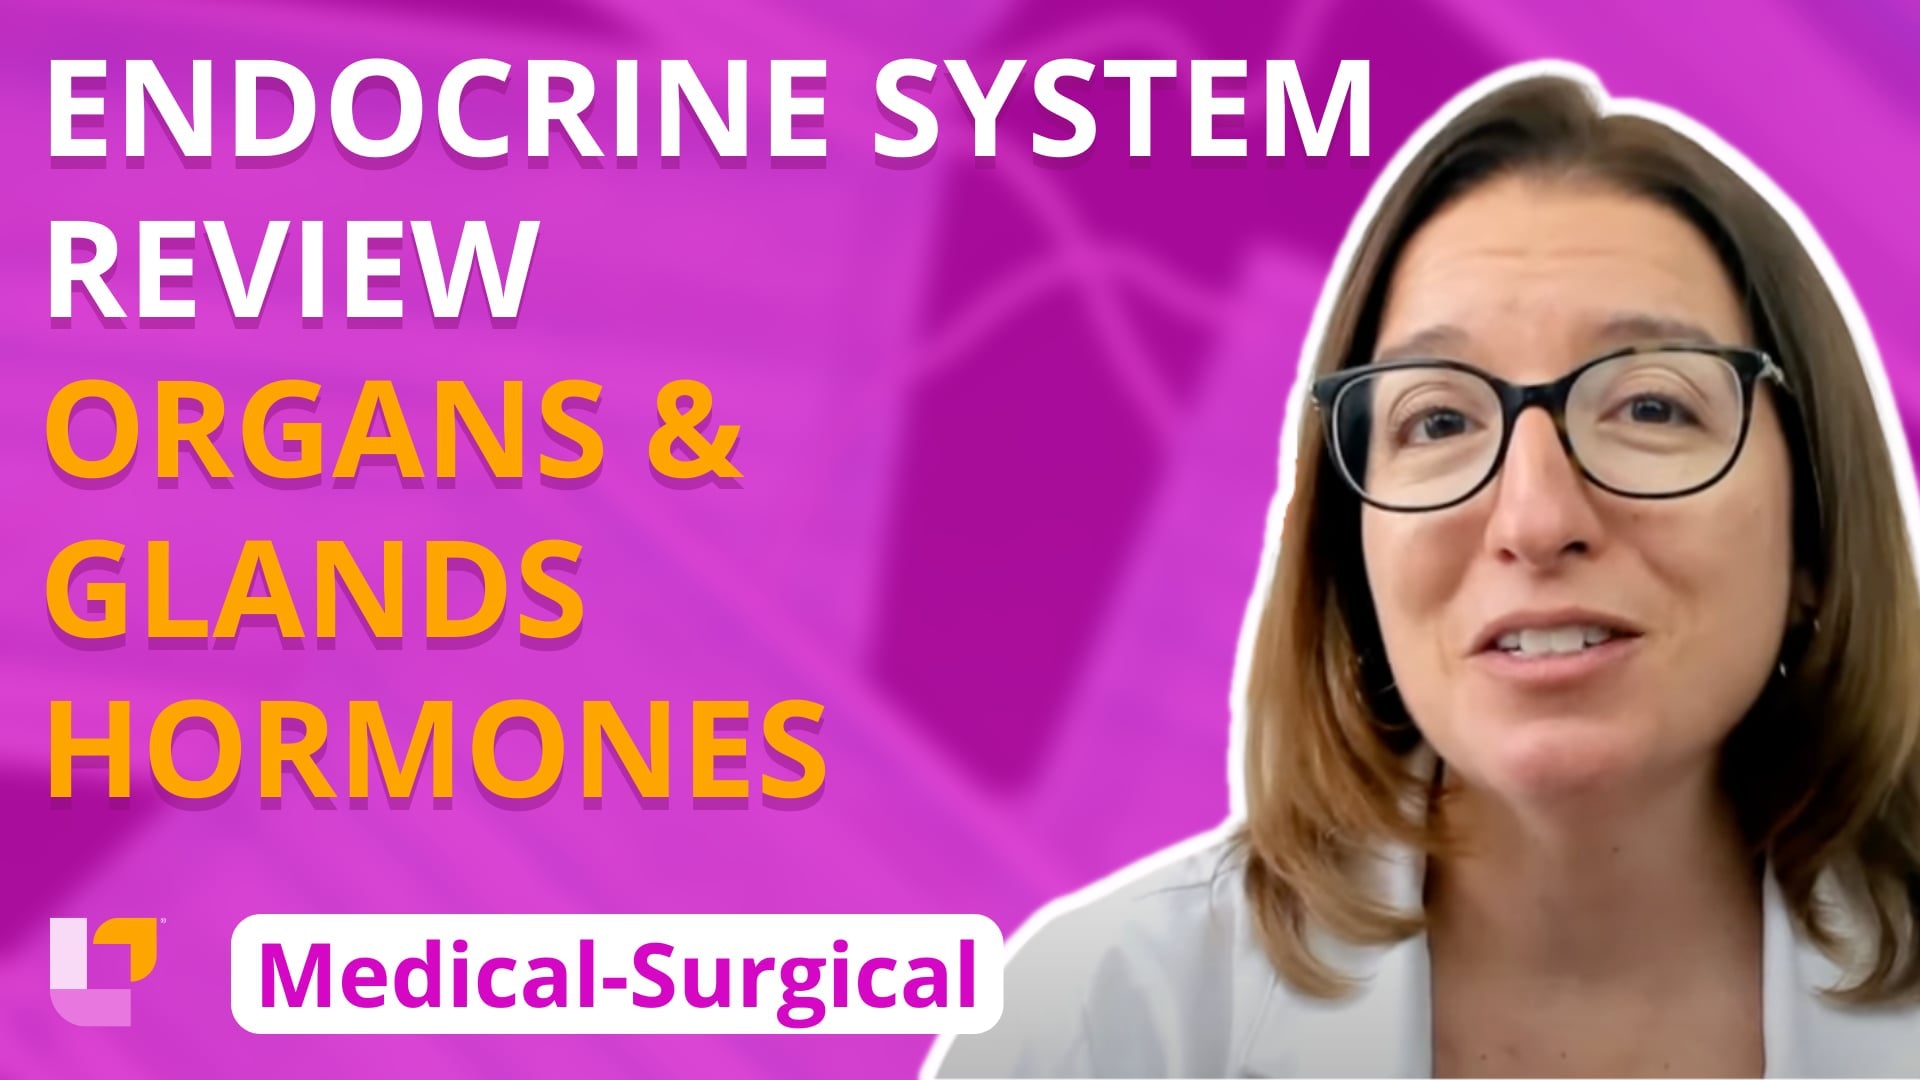 Med-Surg Endocrine System, part 2: Organs, glands & hormone overview - LevelUpRN